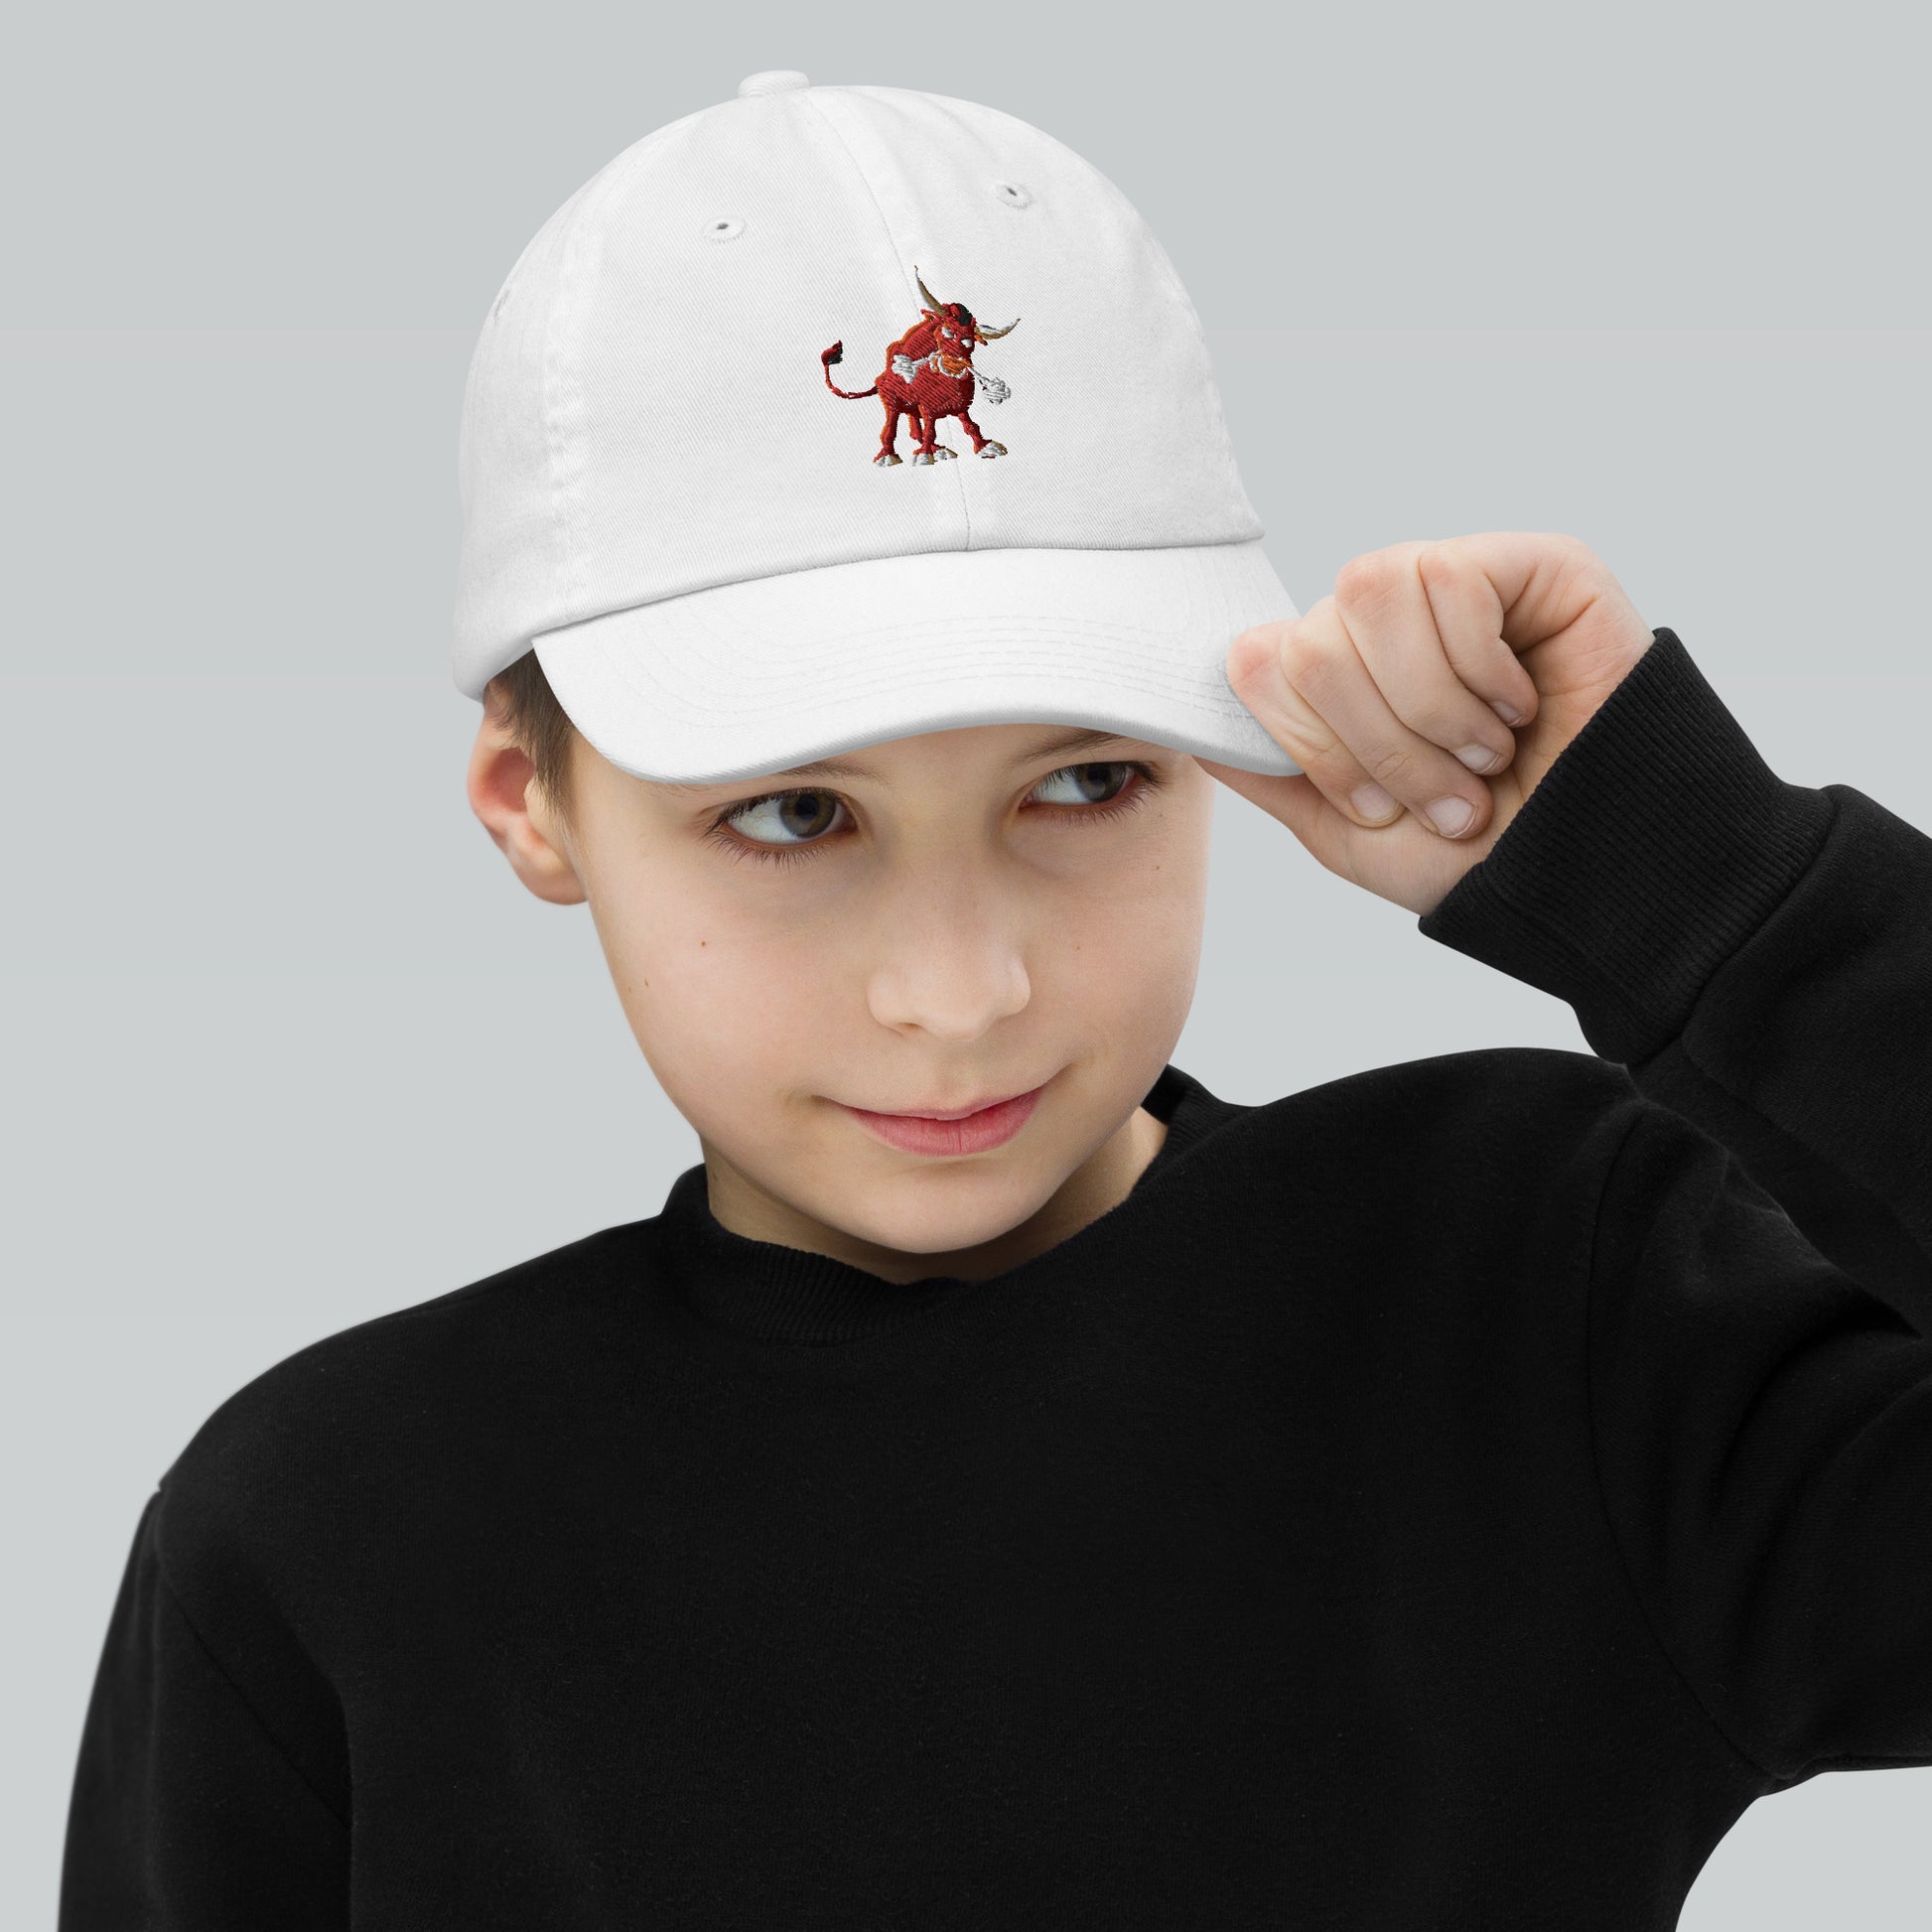 white kids baseball cap with bull